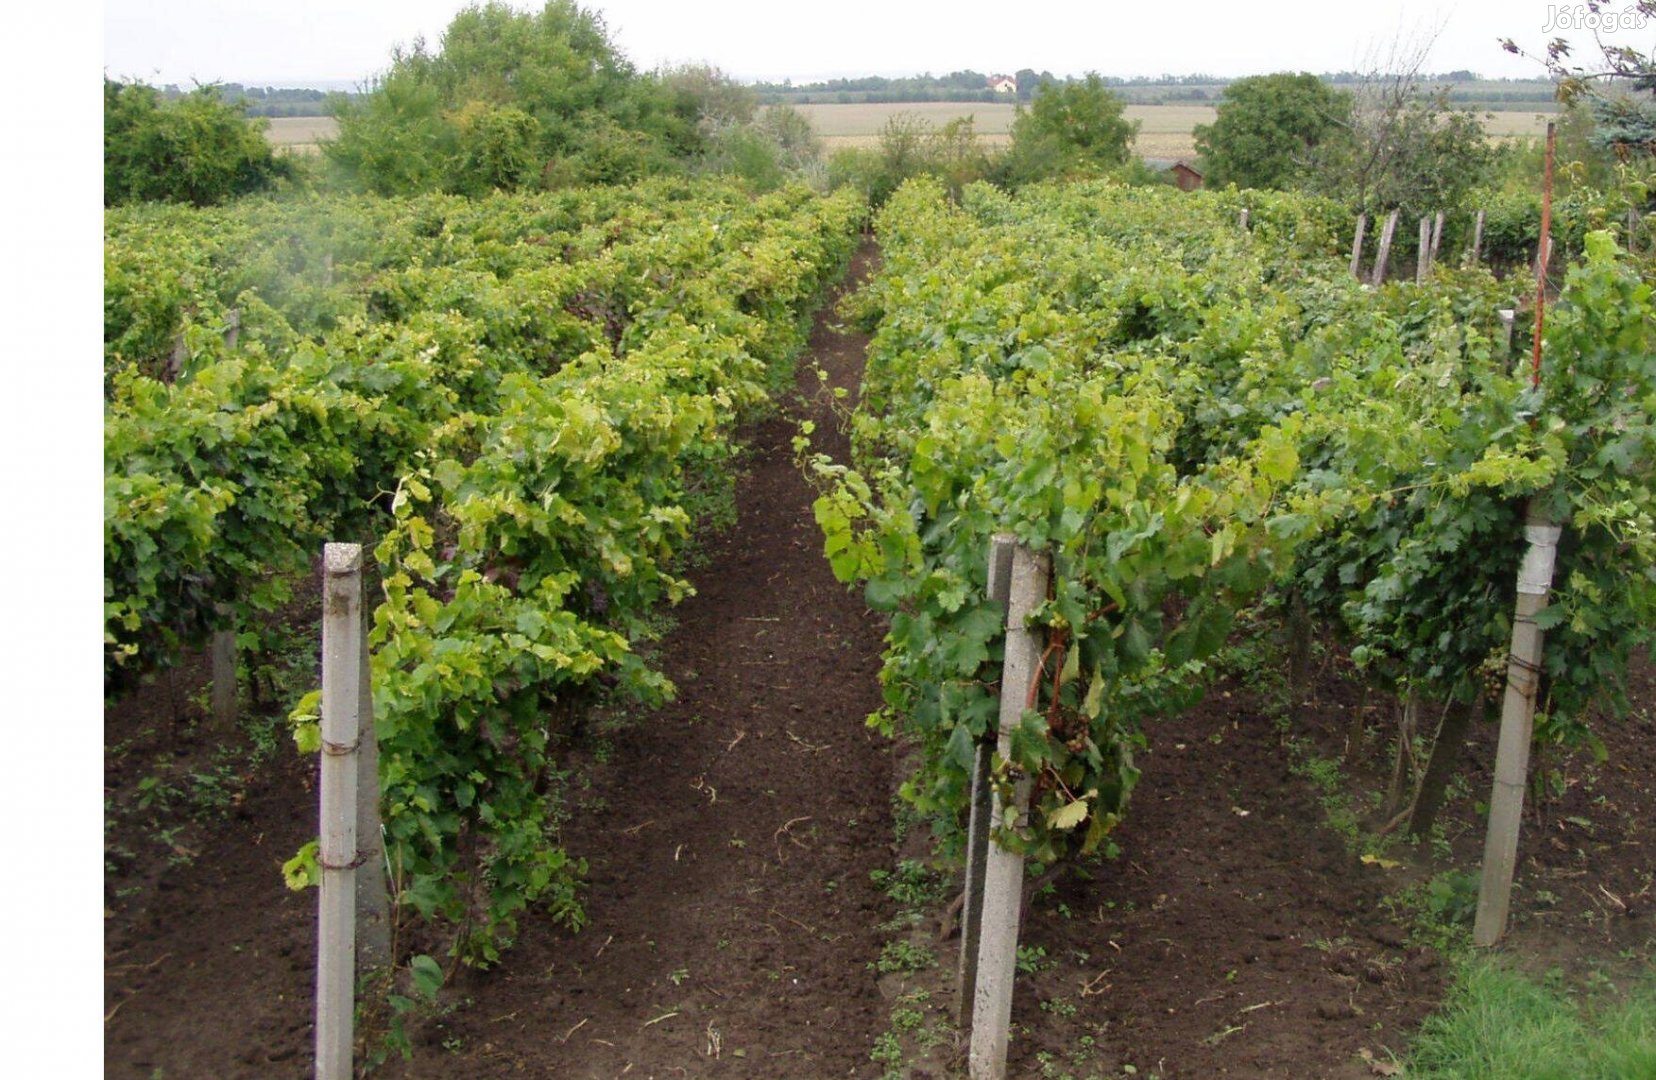 Csemegeszőlő termesztő gazdaság